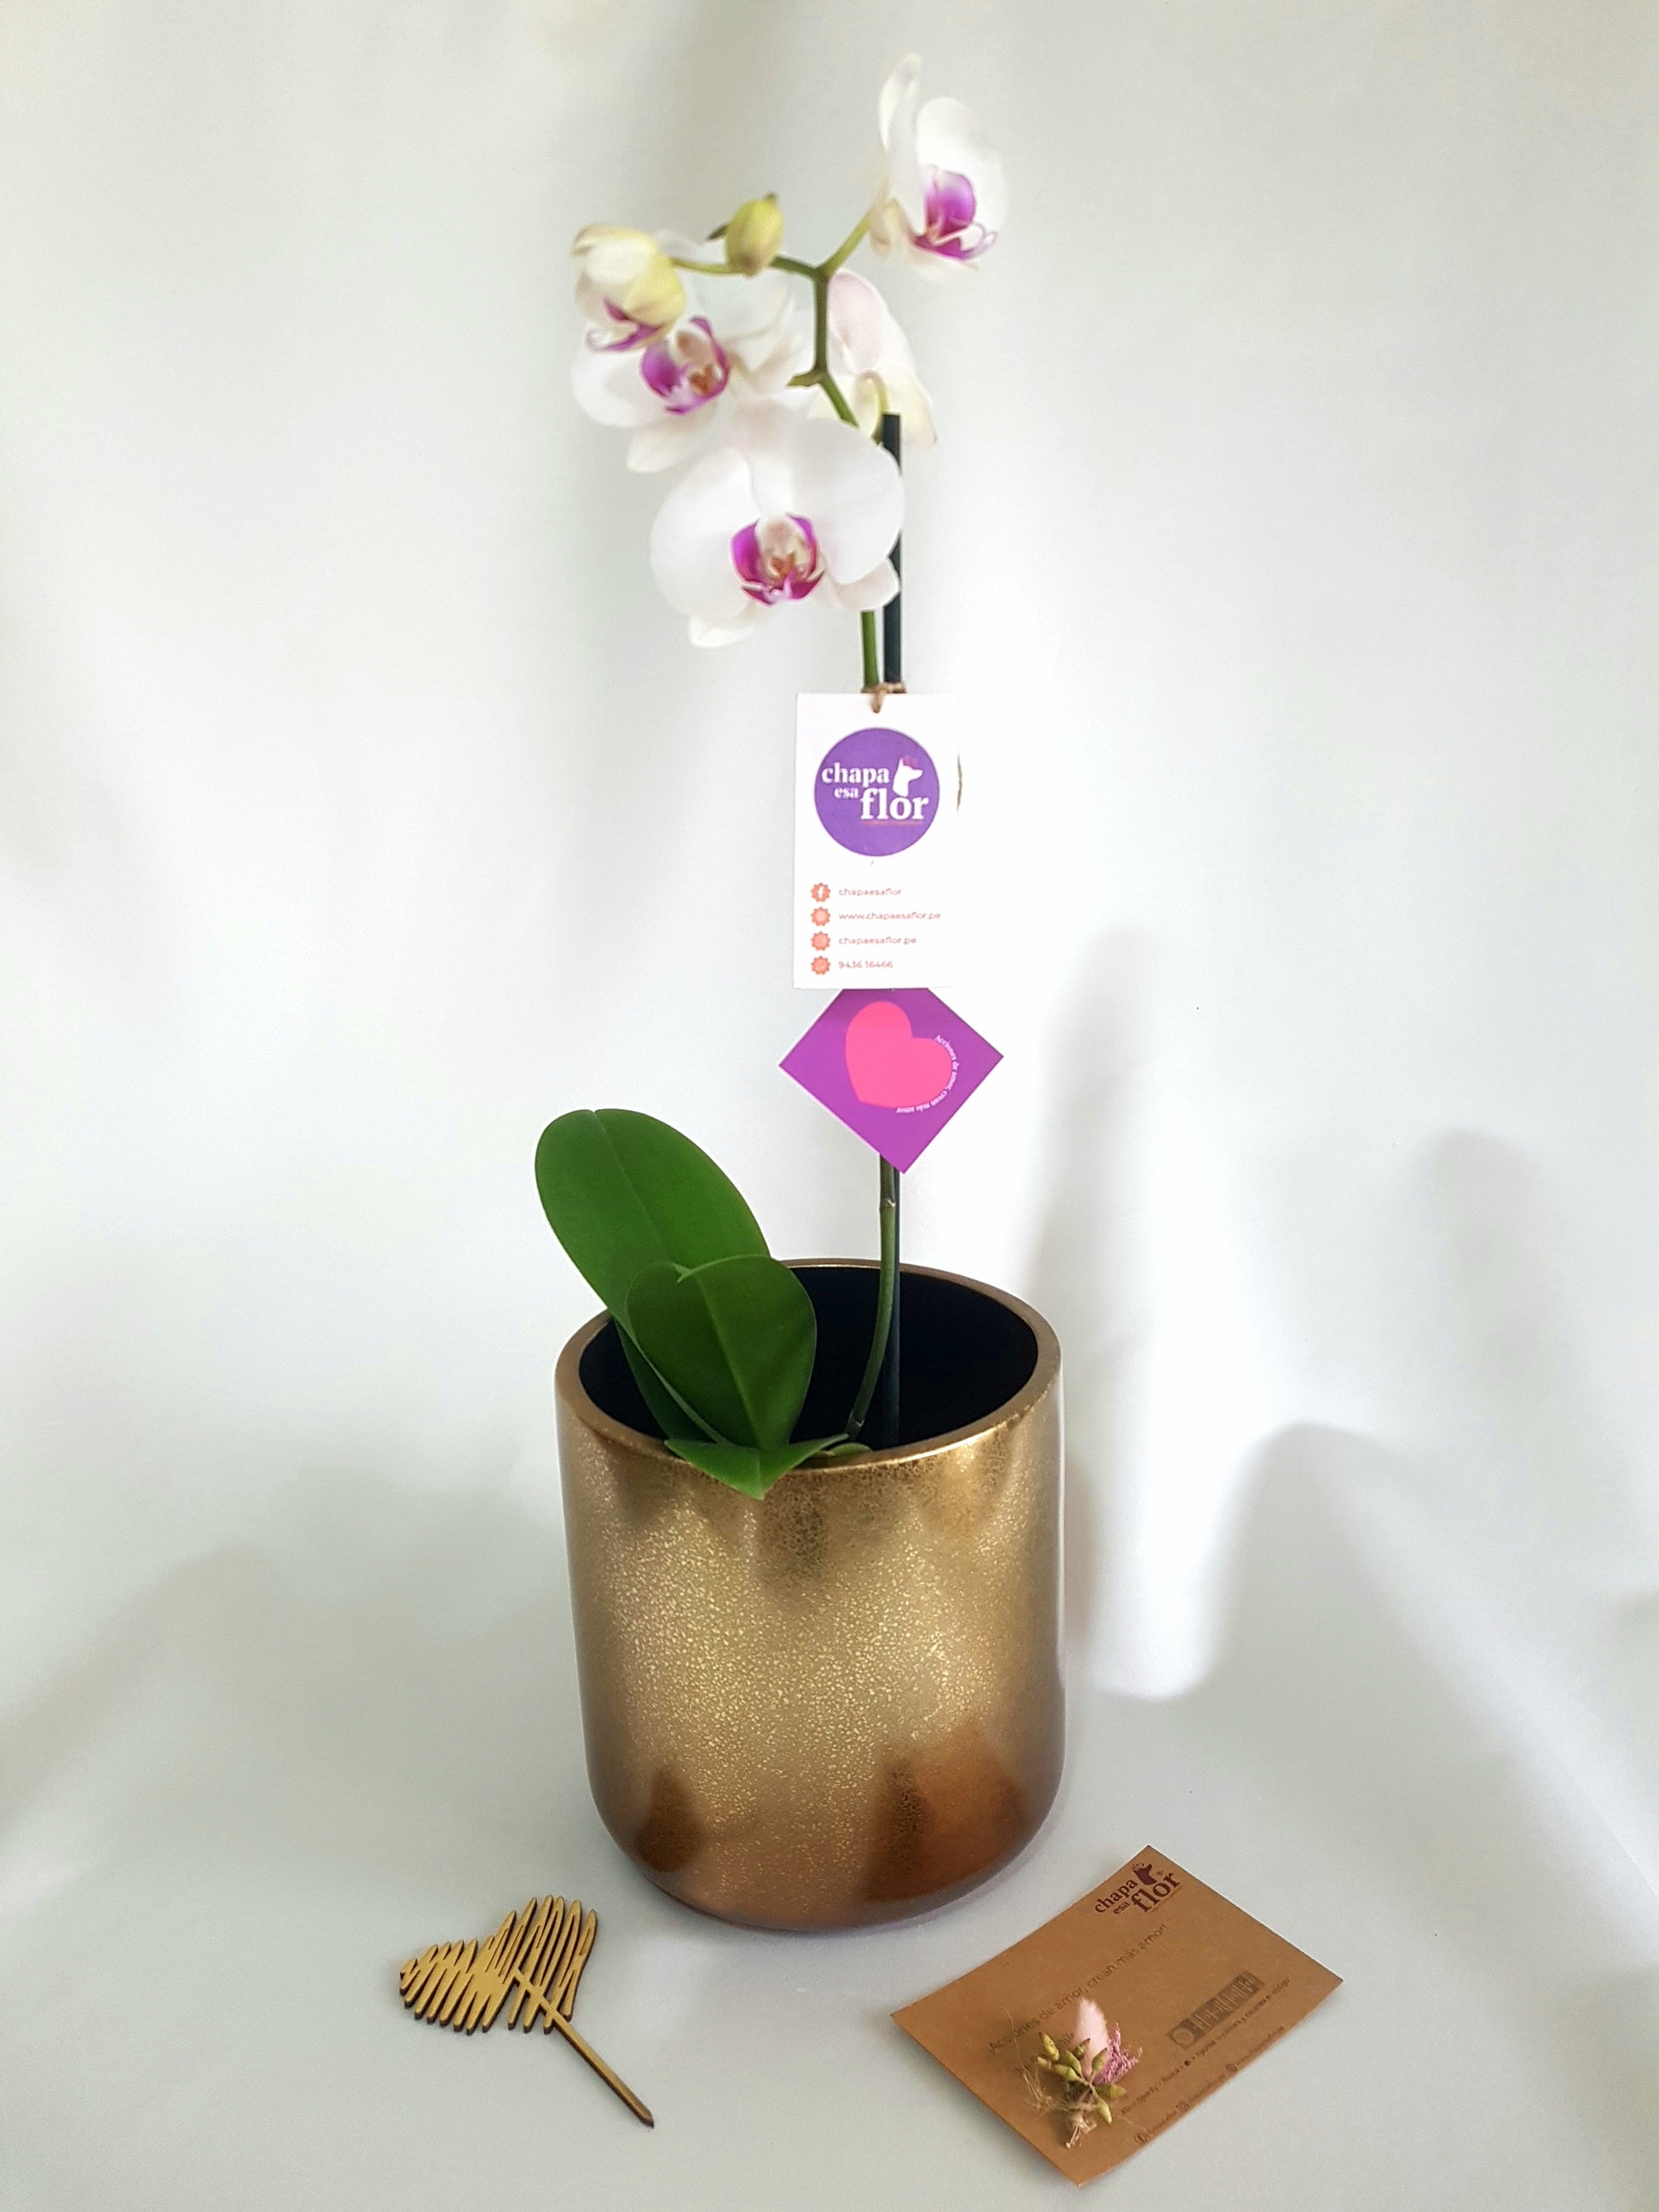 Orquídea Amarilla – Chapa esa Flor